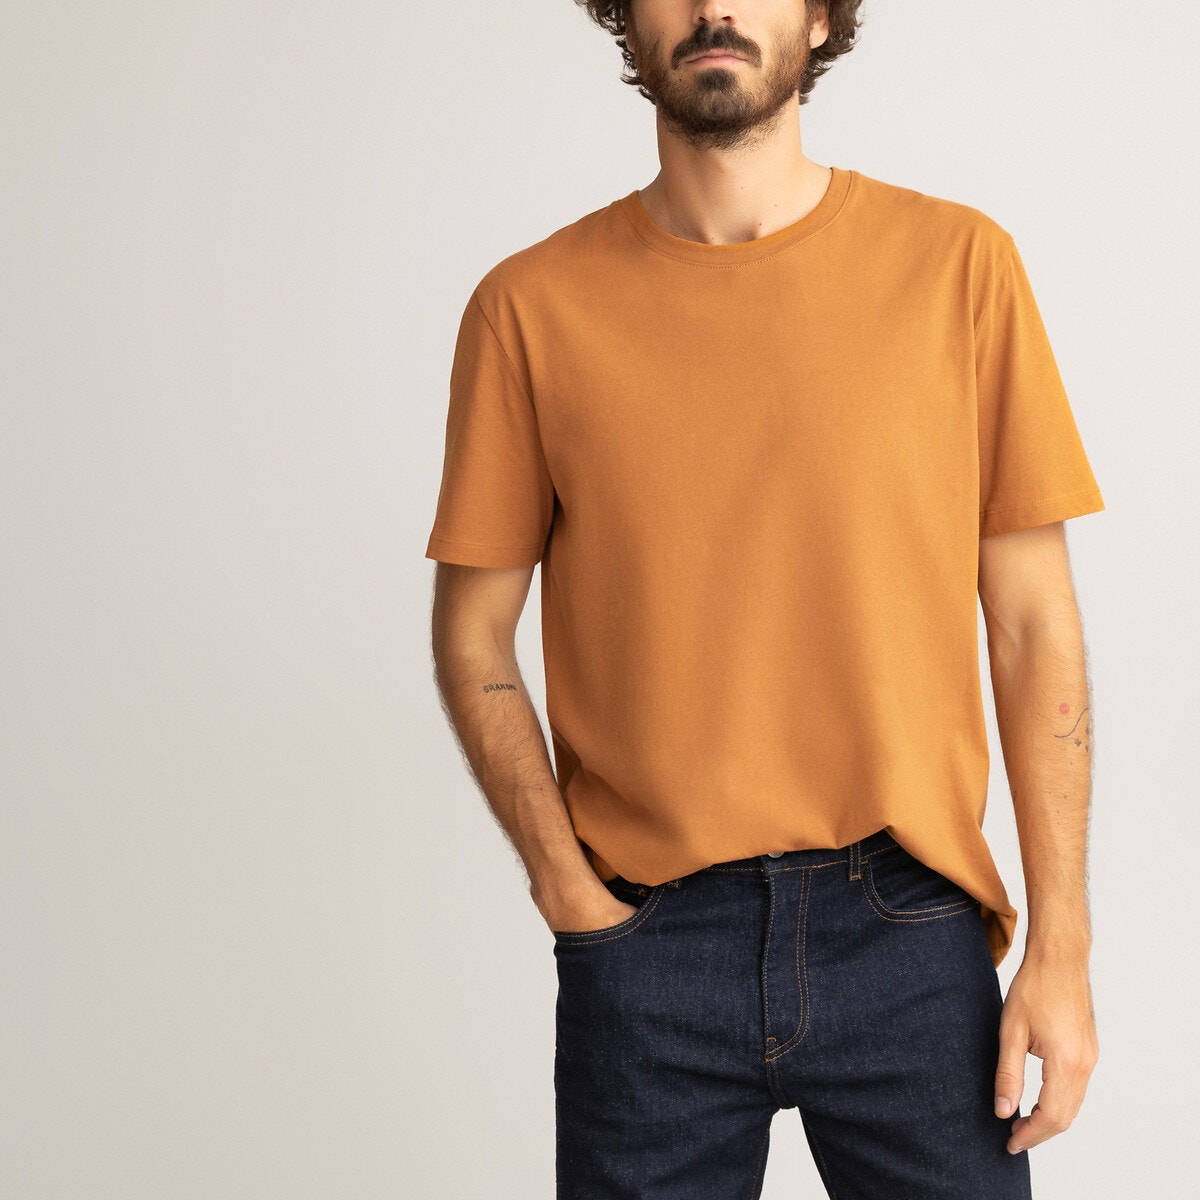 ΑΝΔΡΑΣ | Μπλούζες & Πουκάμισα | T-shirts Κοντομάνικο T-shirt από οργανικό βαμβάκι